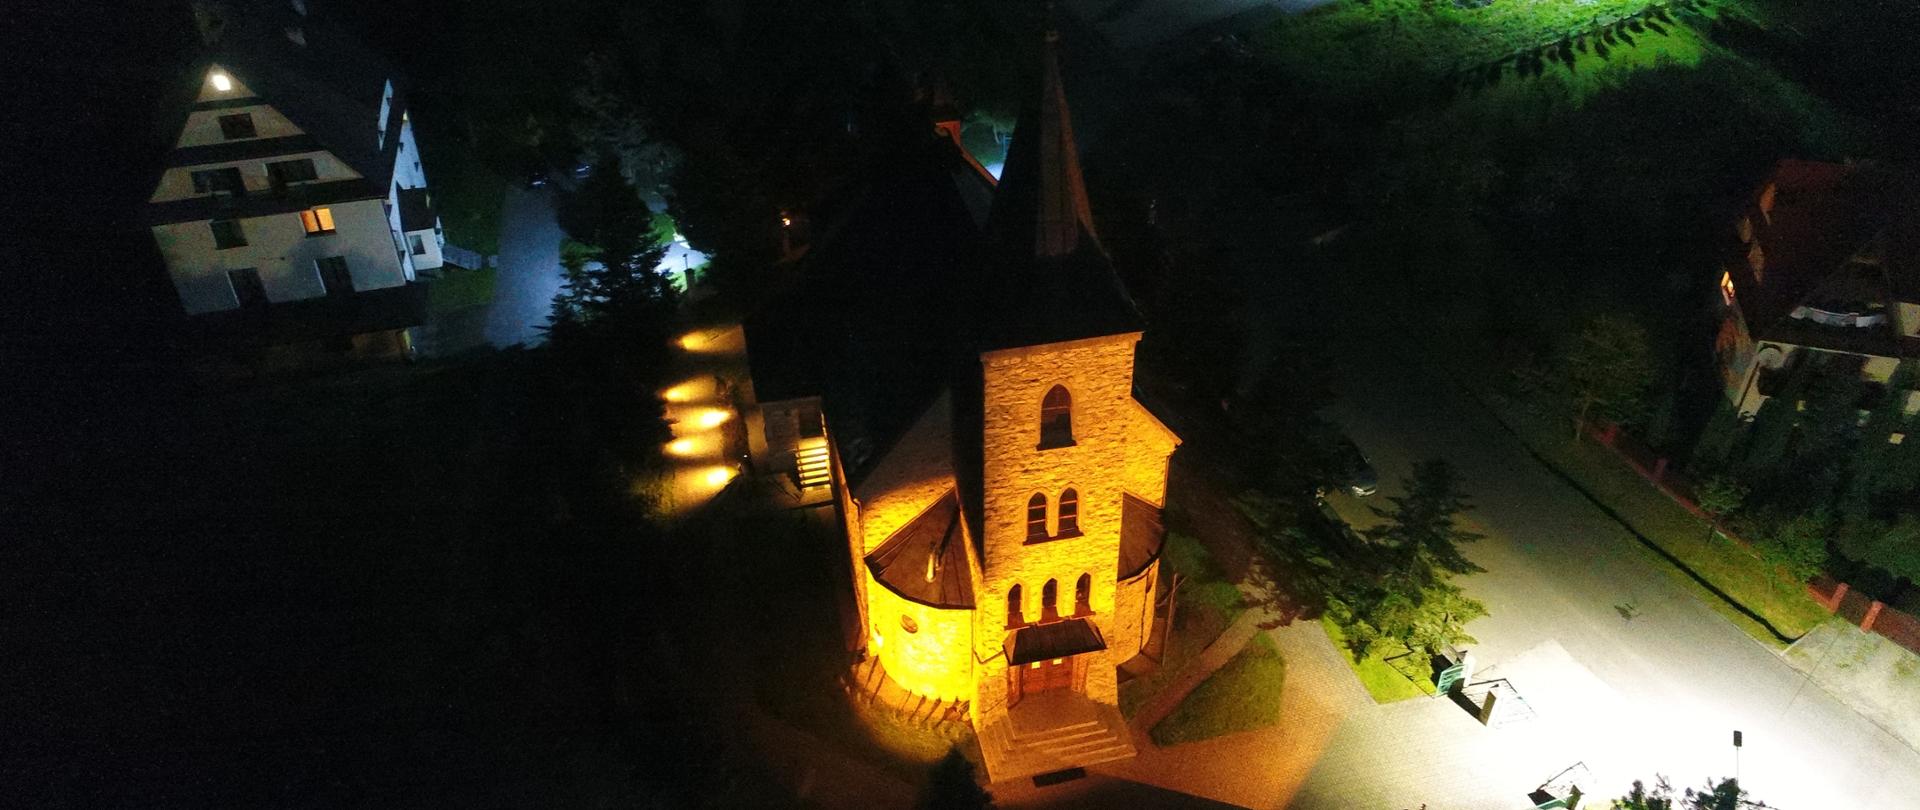 Widok z lotu ptaka na oświetlony pomarańczowym światłem kościół. Część budynku nie jest oświetlona. Z prawej strony widać fragment drogi z intensywnym, białym oświetleniem.